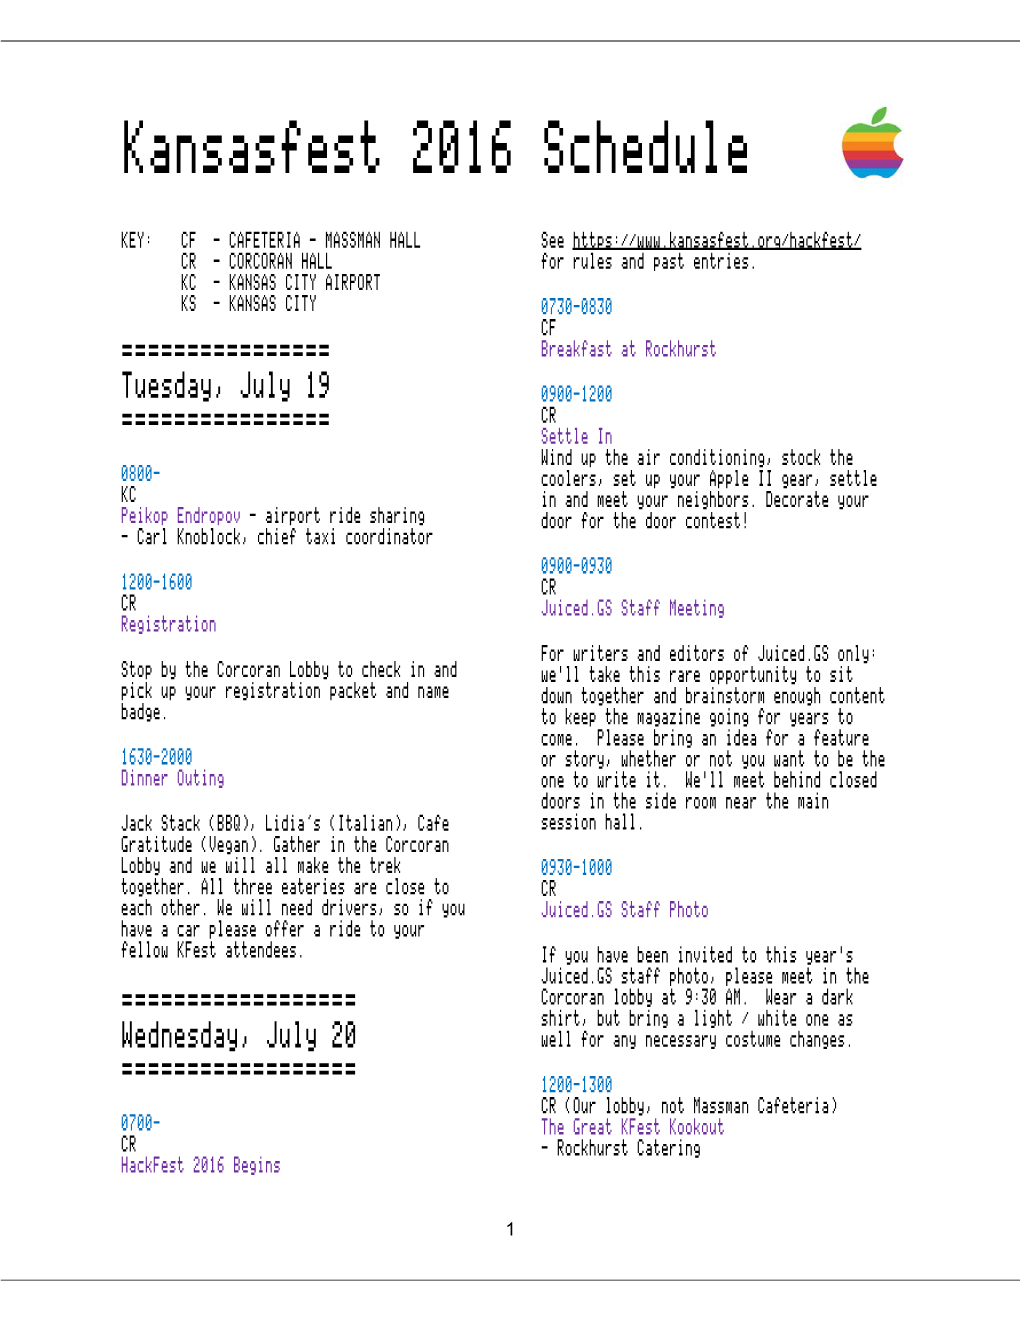 Kansasfest 2016 Schedule